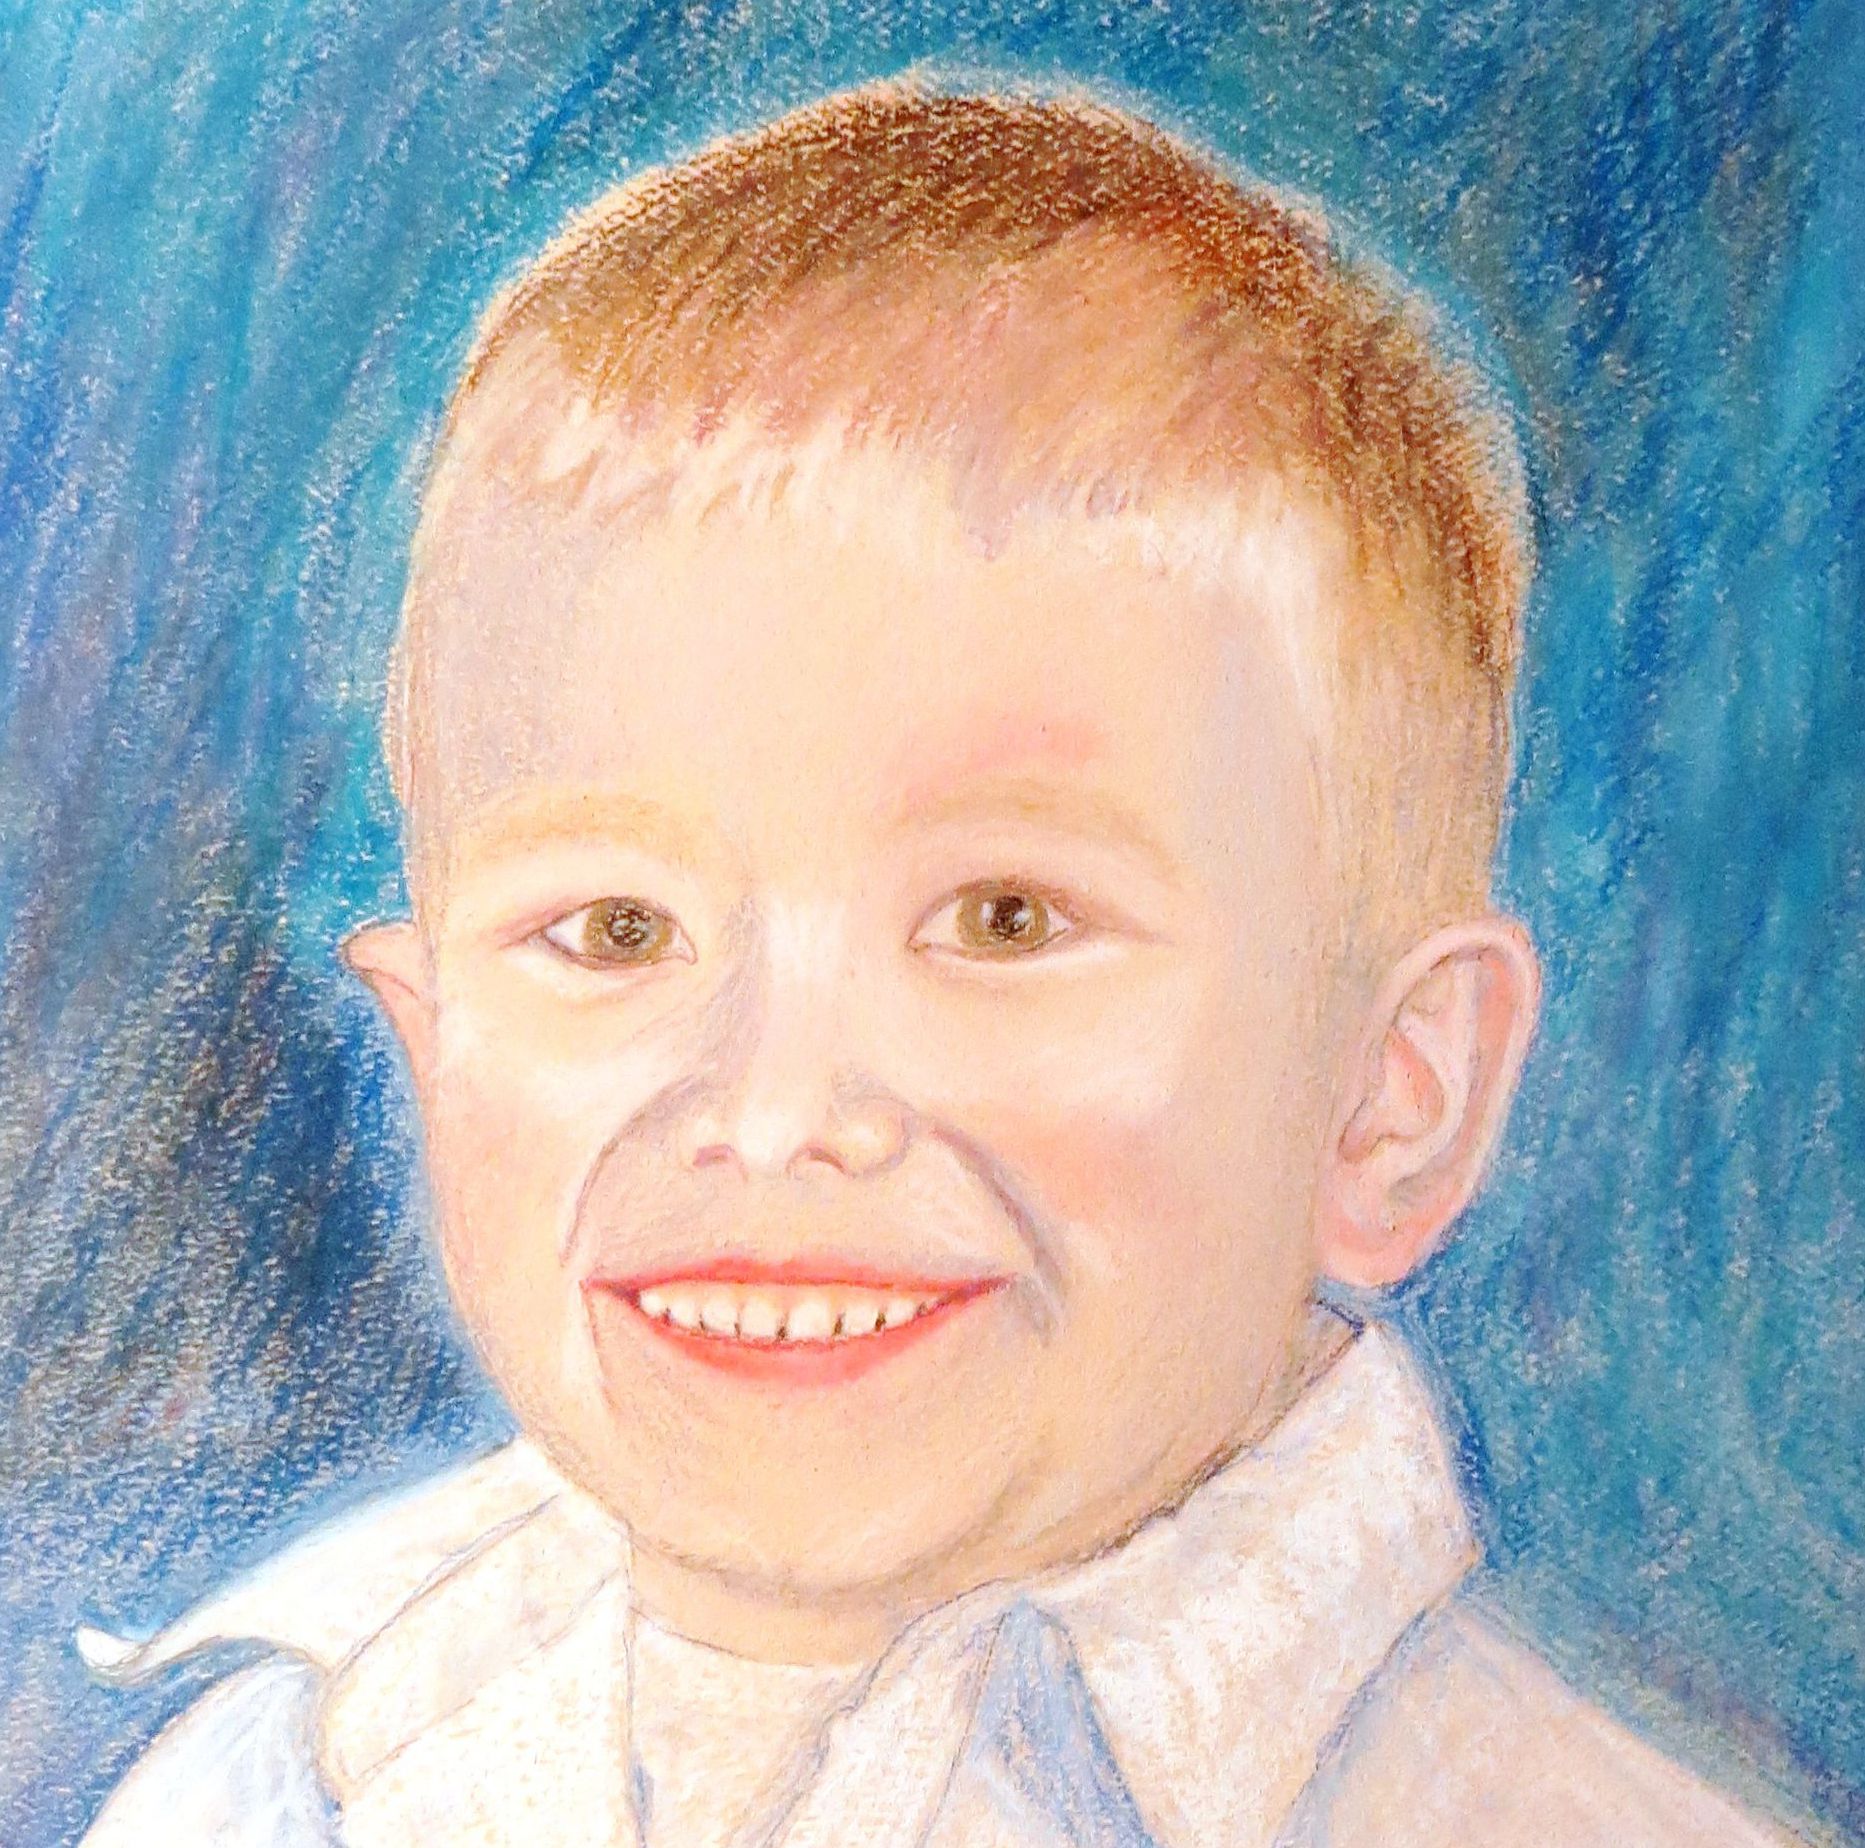 boy in pastel